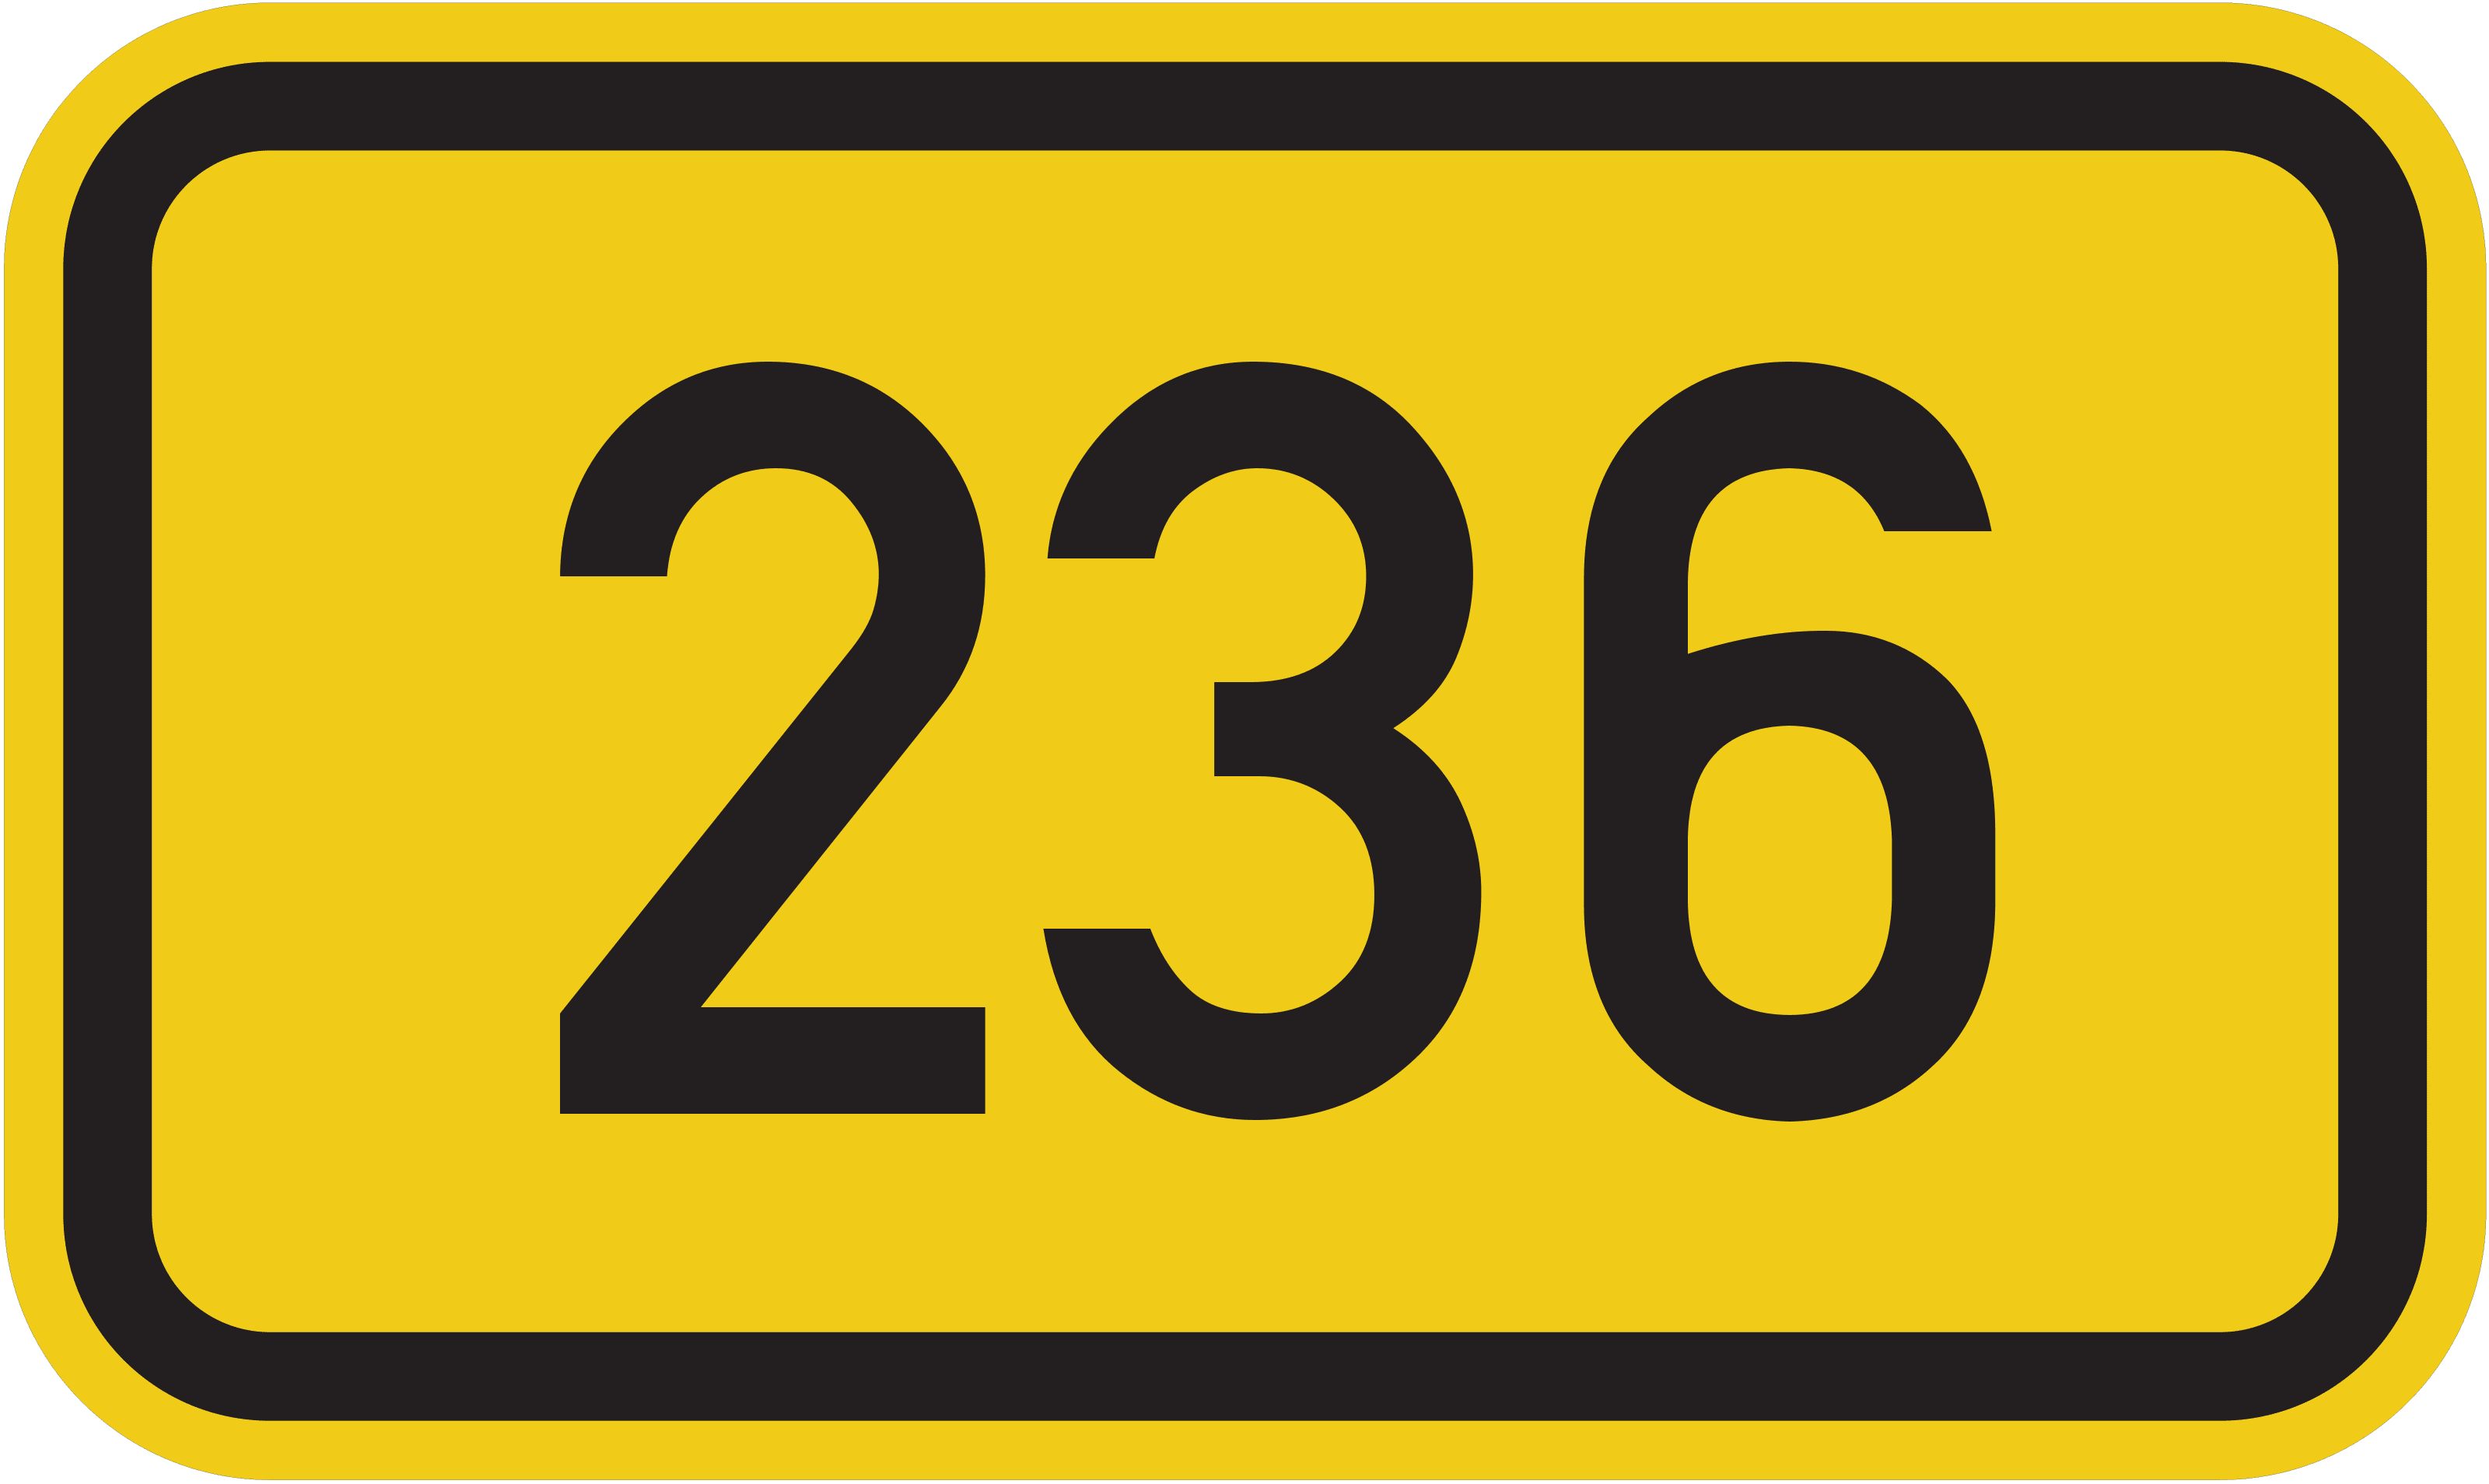 Bundesstraße B 236